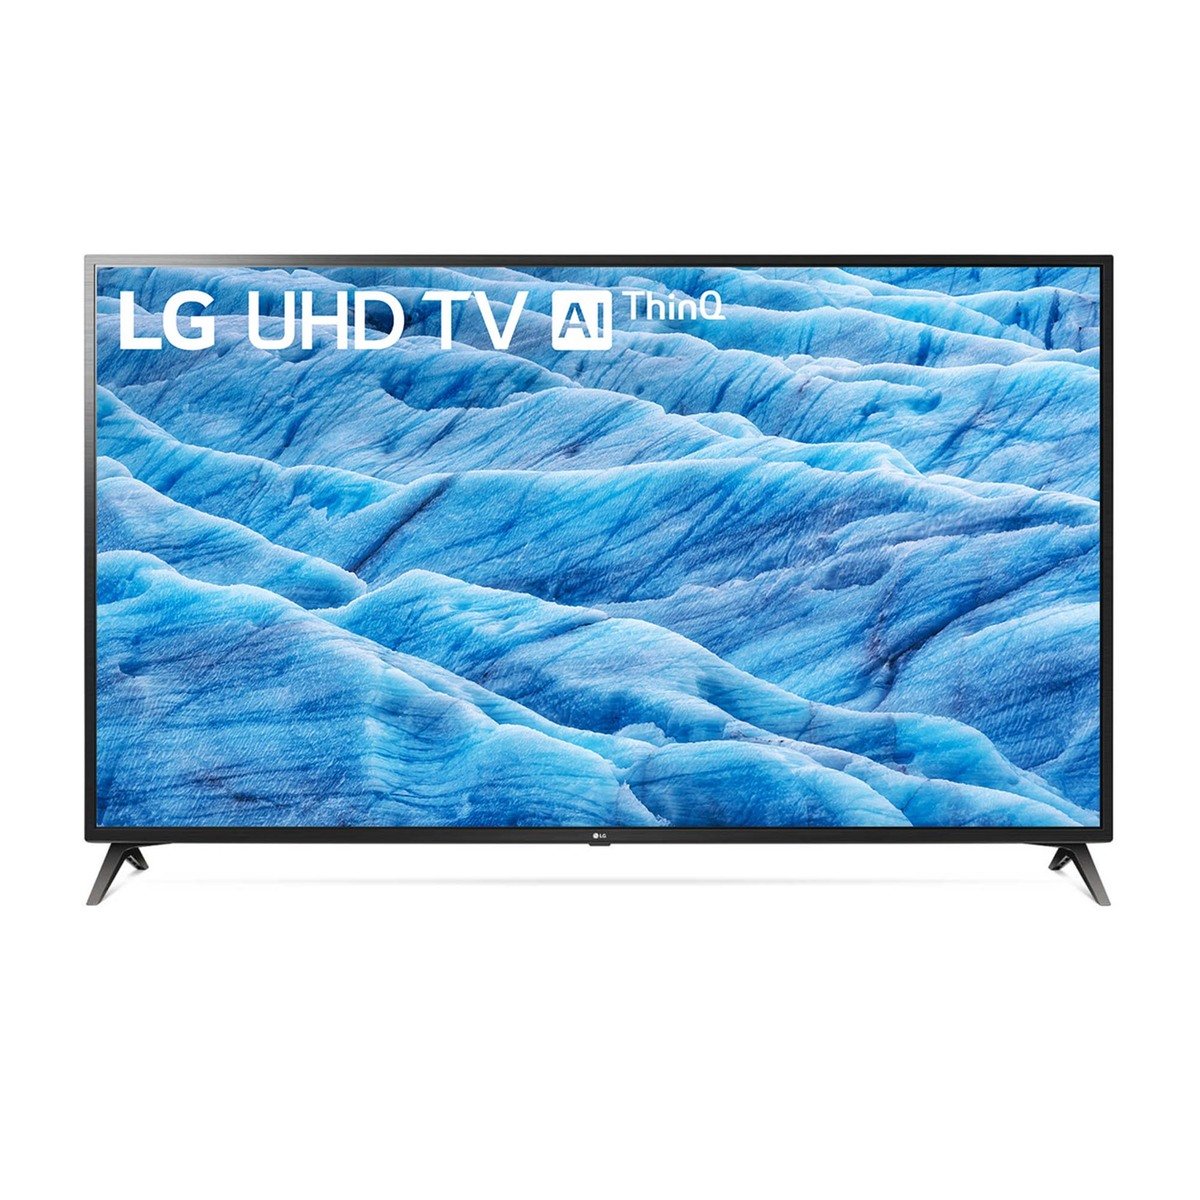 LG 4K Ultra HD Smart LED TV 70UM7380PVA 70"